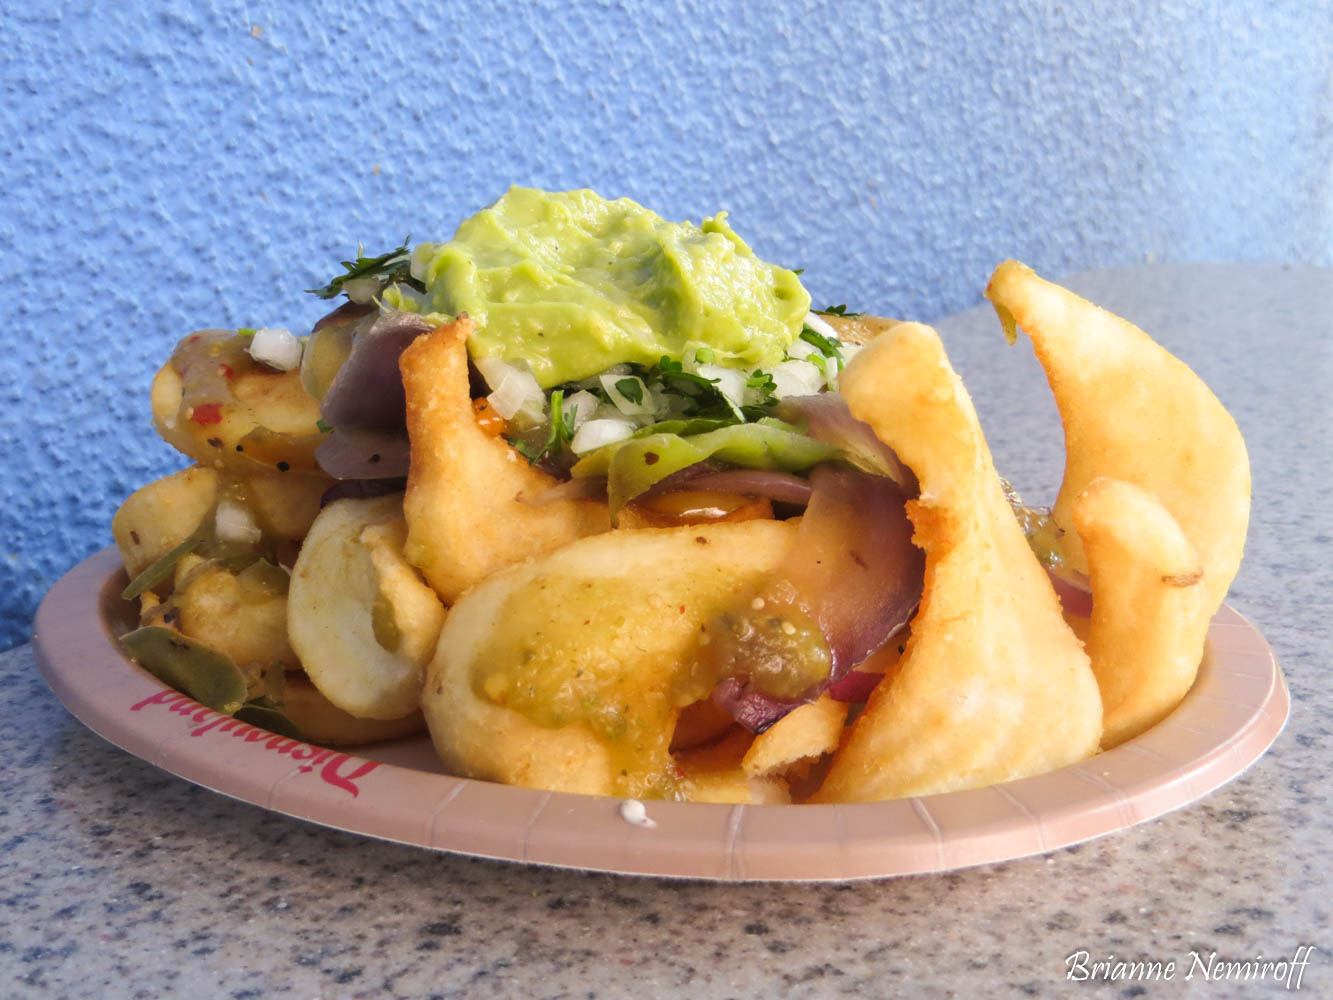 Carne Asada Fries at Award Wieners, Best Vegan Food at Disney California Adventure